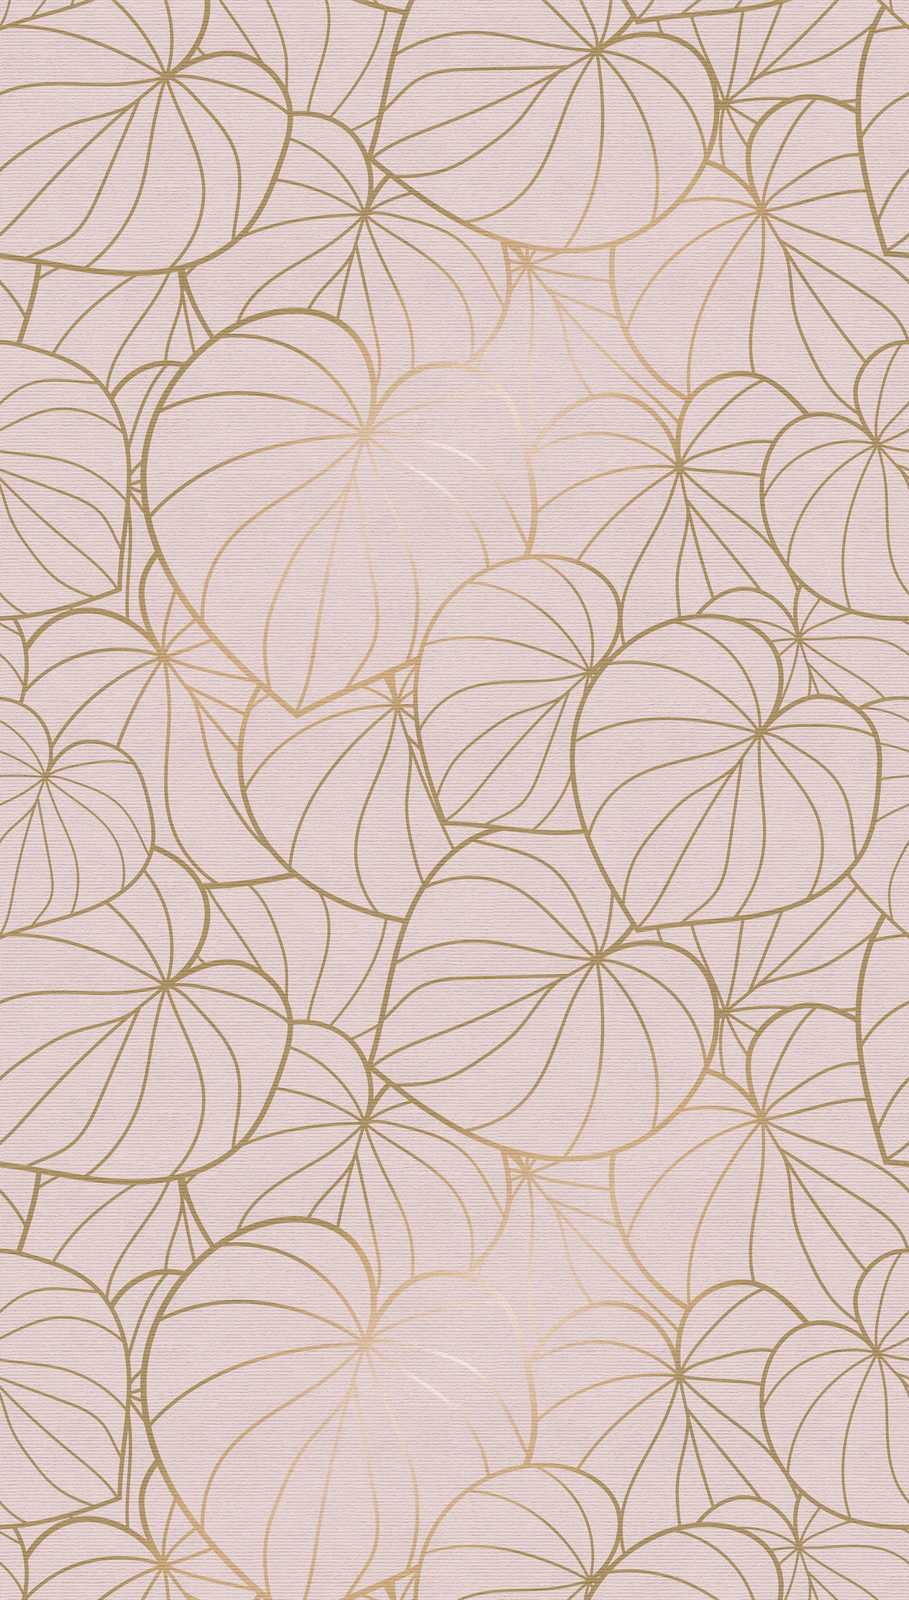             behang nieuwigheid | motief behang bladeren motief goud & beige lijn kunst
        